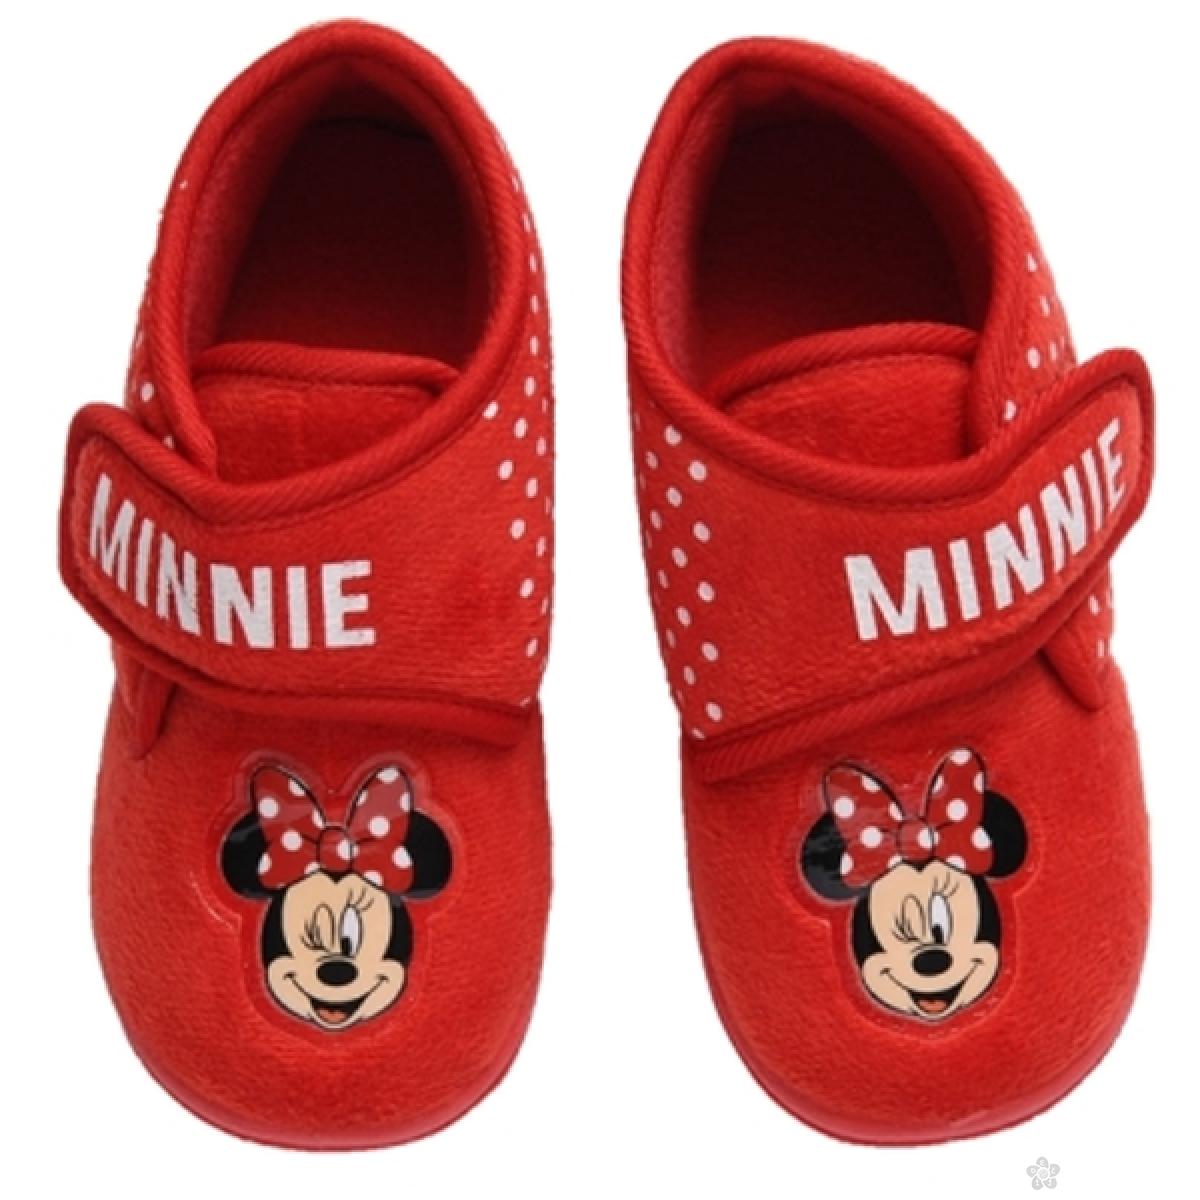 Patofne Minnie & Minnie, D61501 